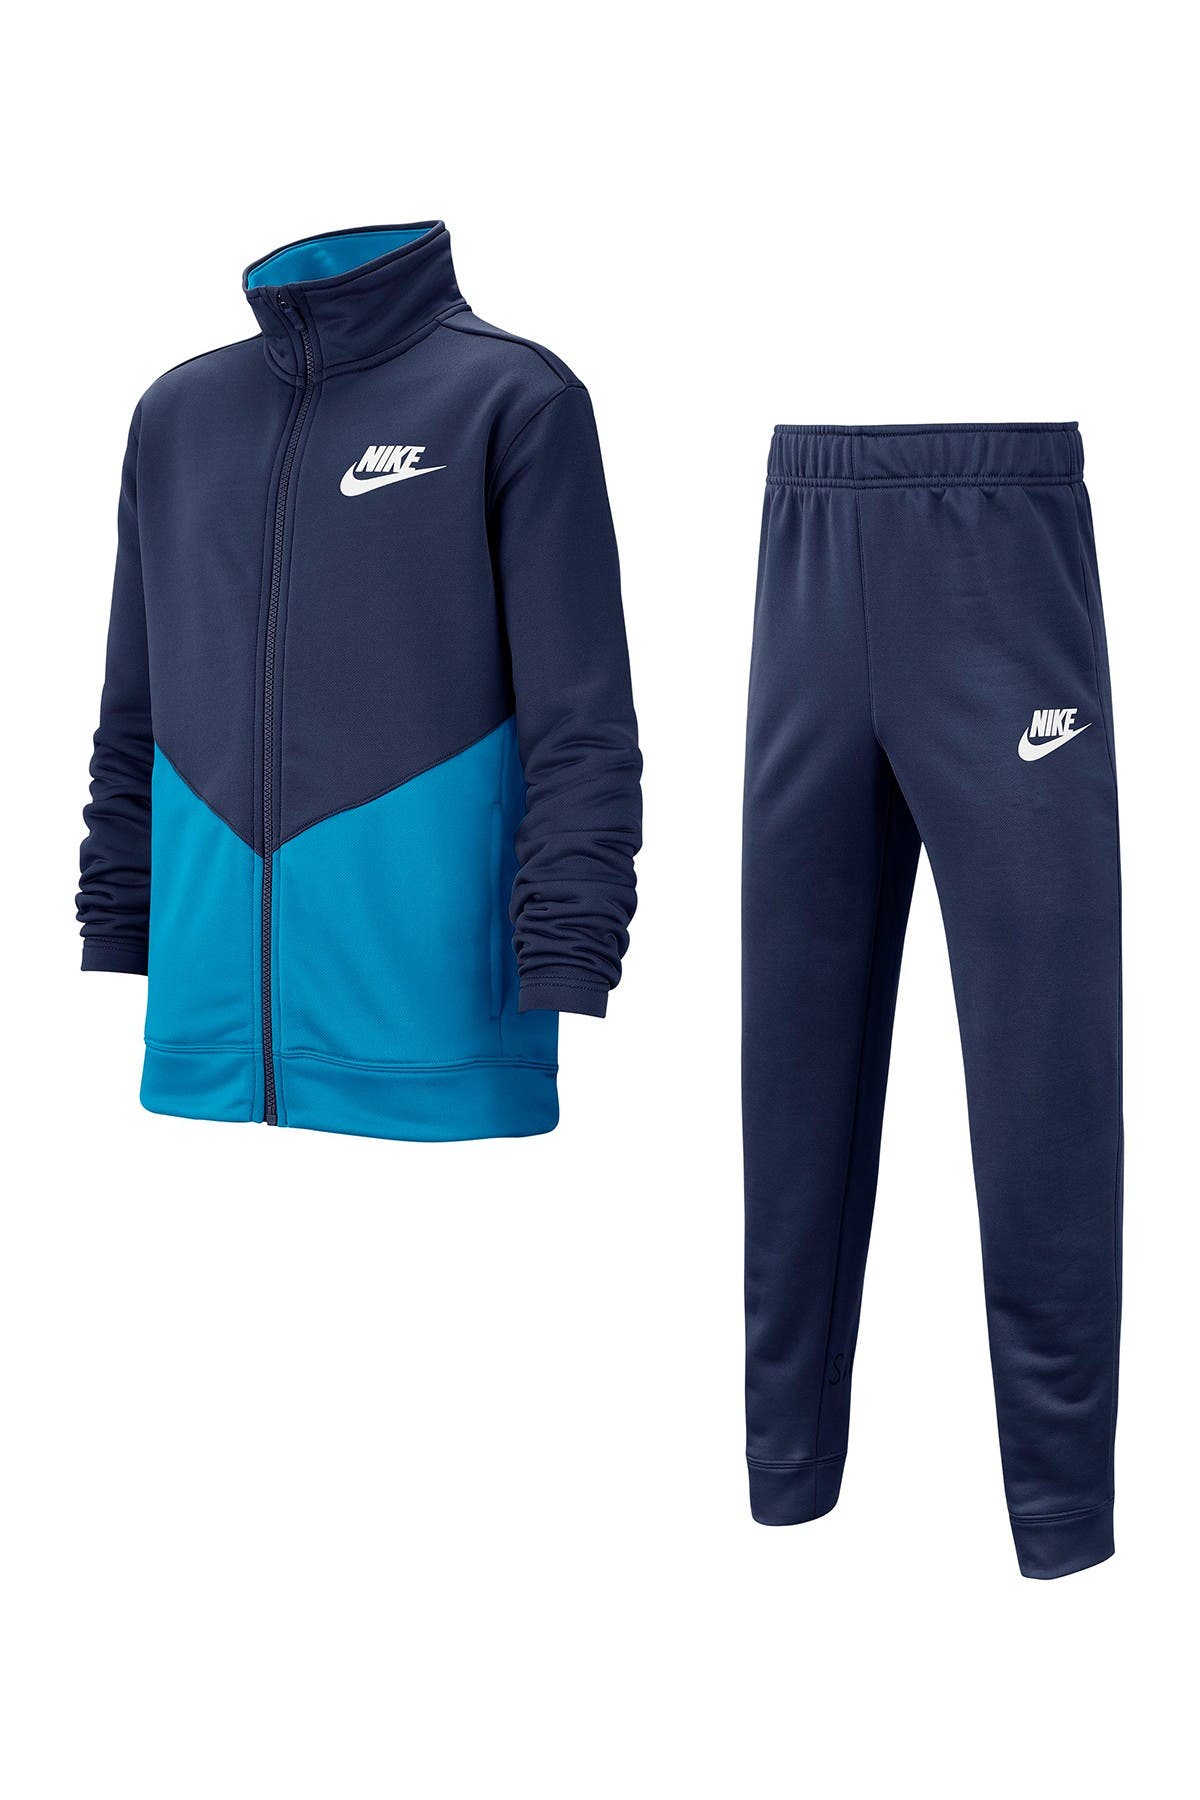 nike windbreaker jogging suits